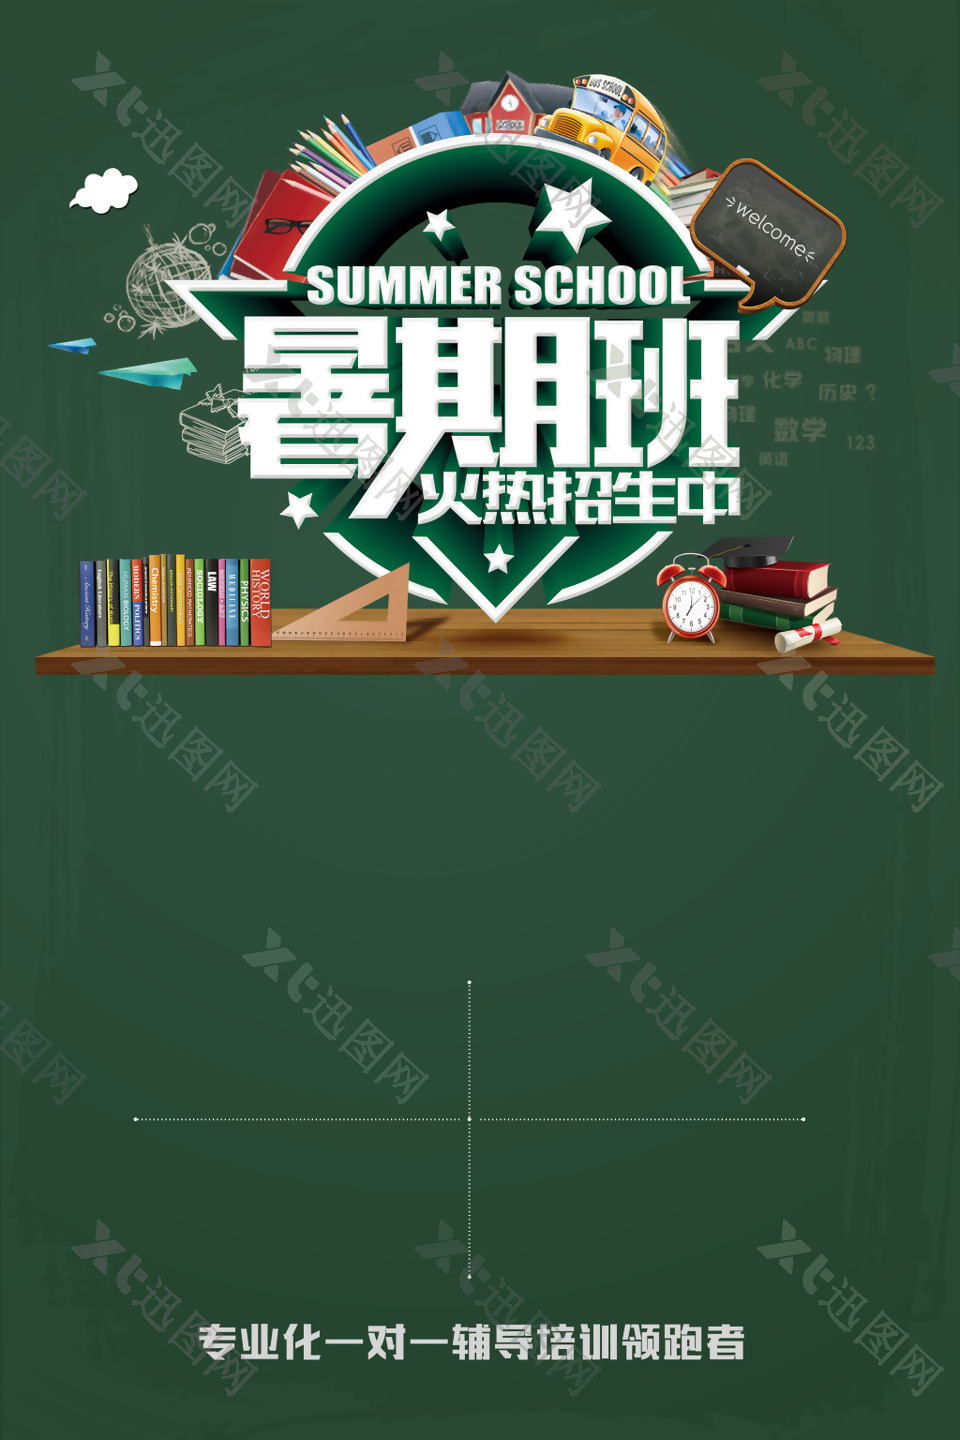 暑假班招生海报